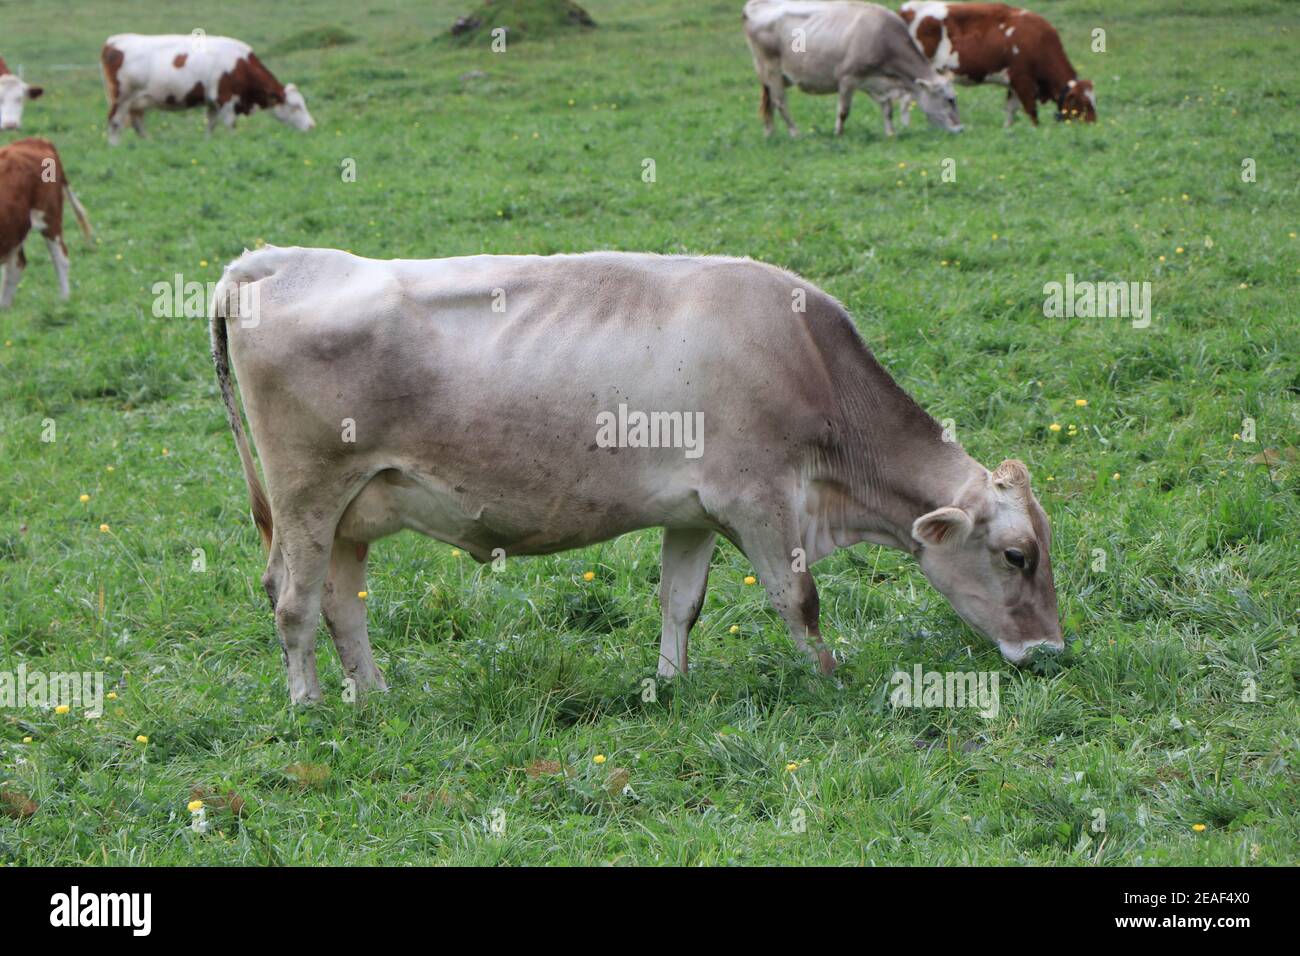 Un groupe de bétail paître sur un terrain vert luxuriant. Photo de haute qualité Banque D'Images